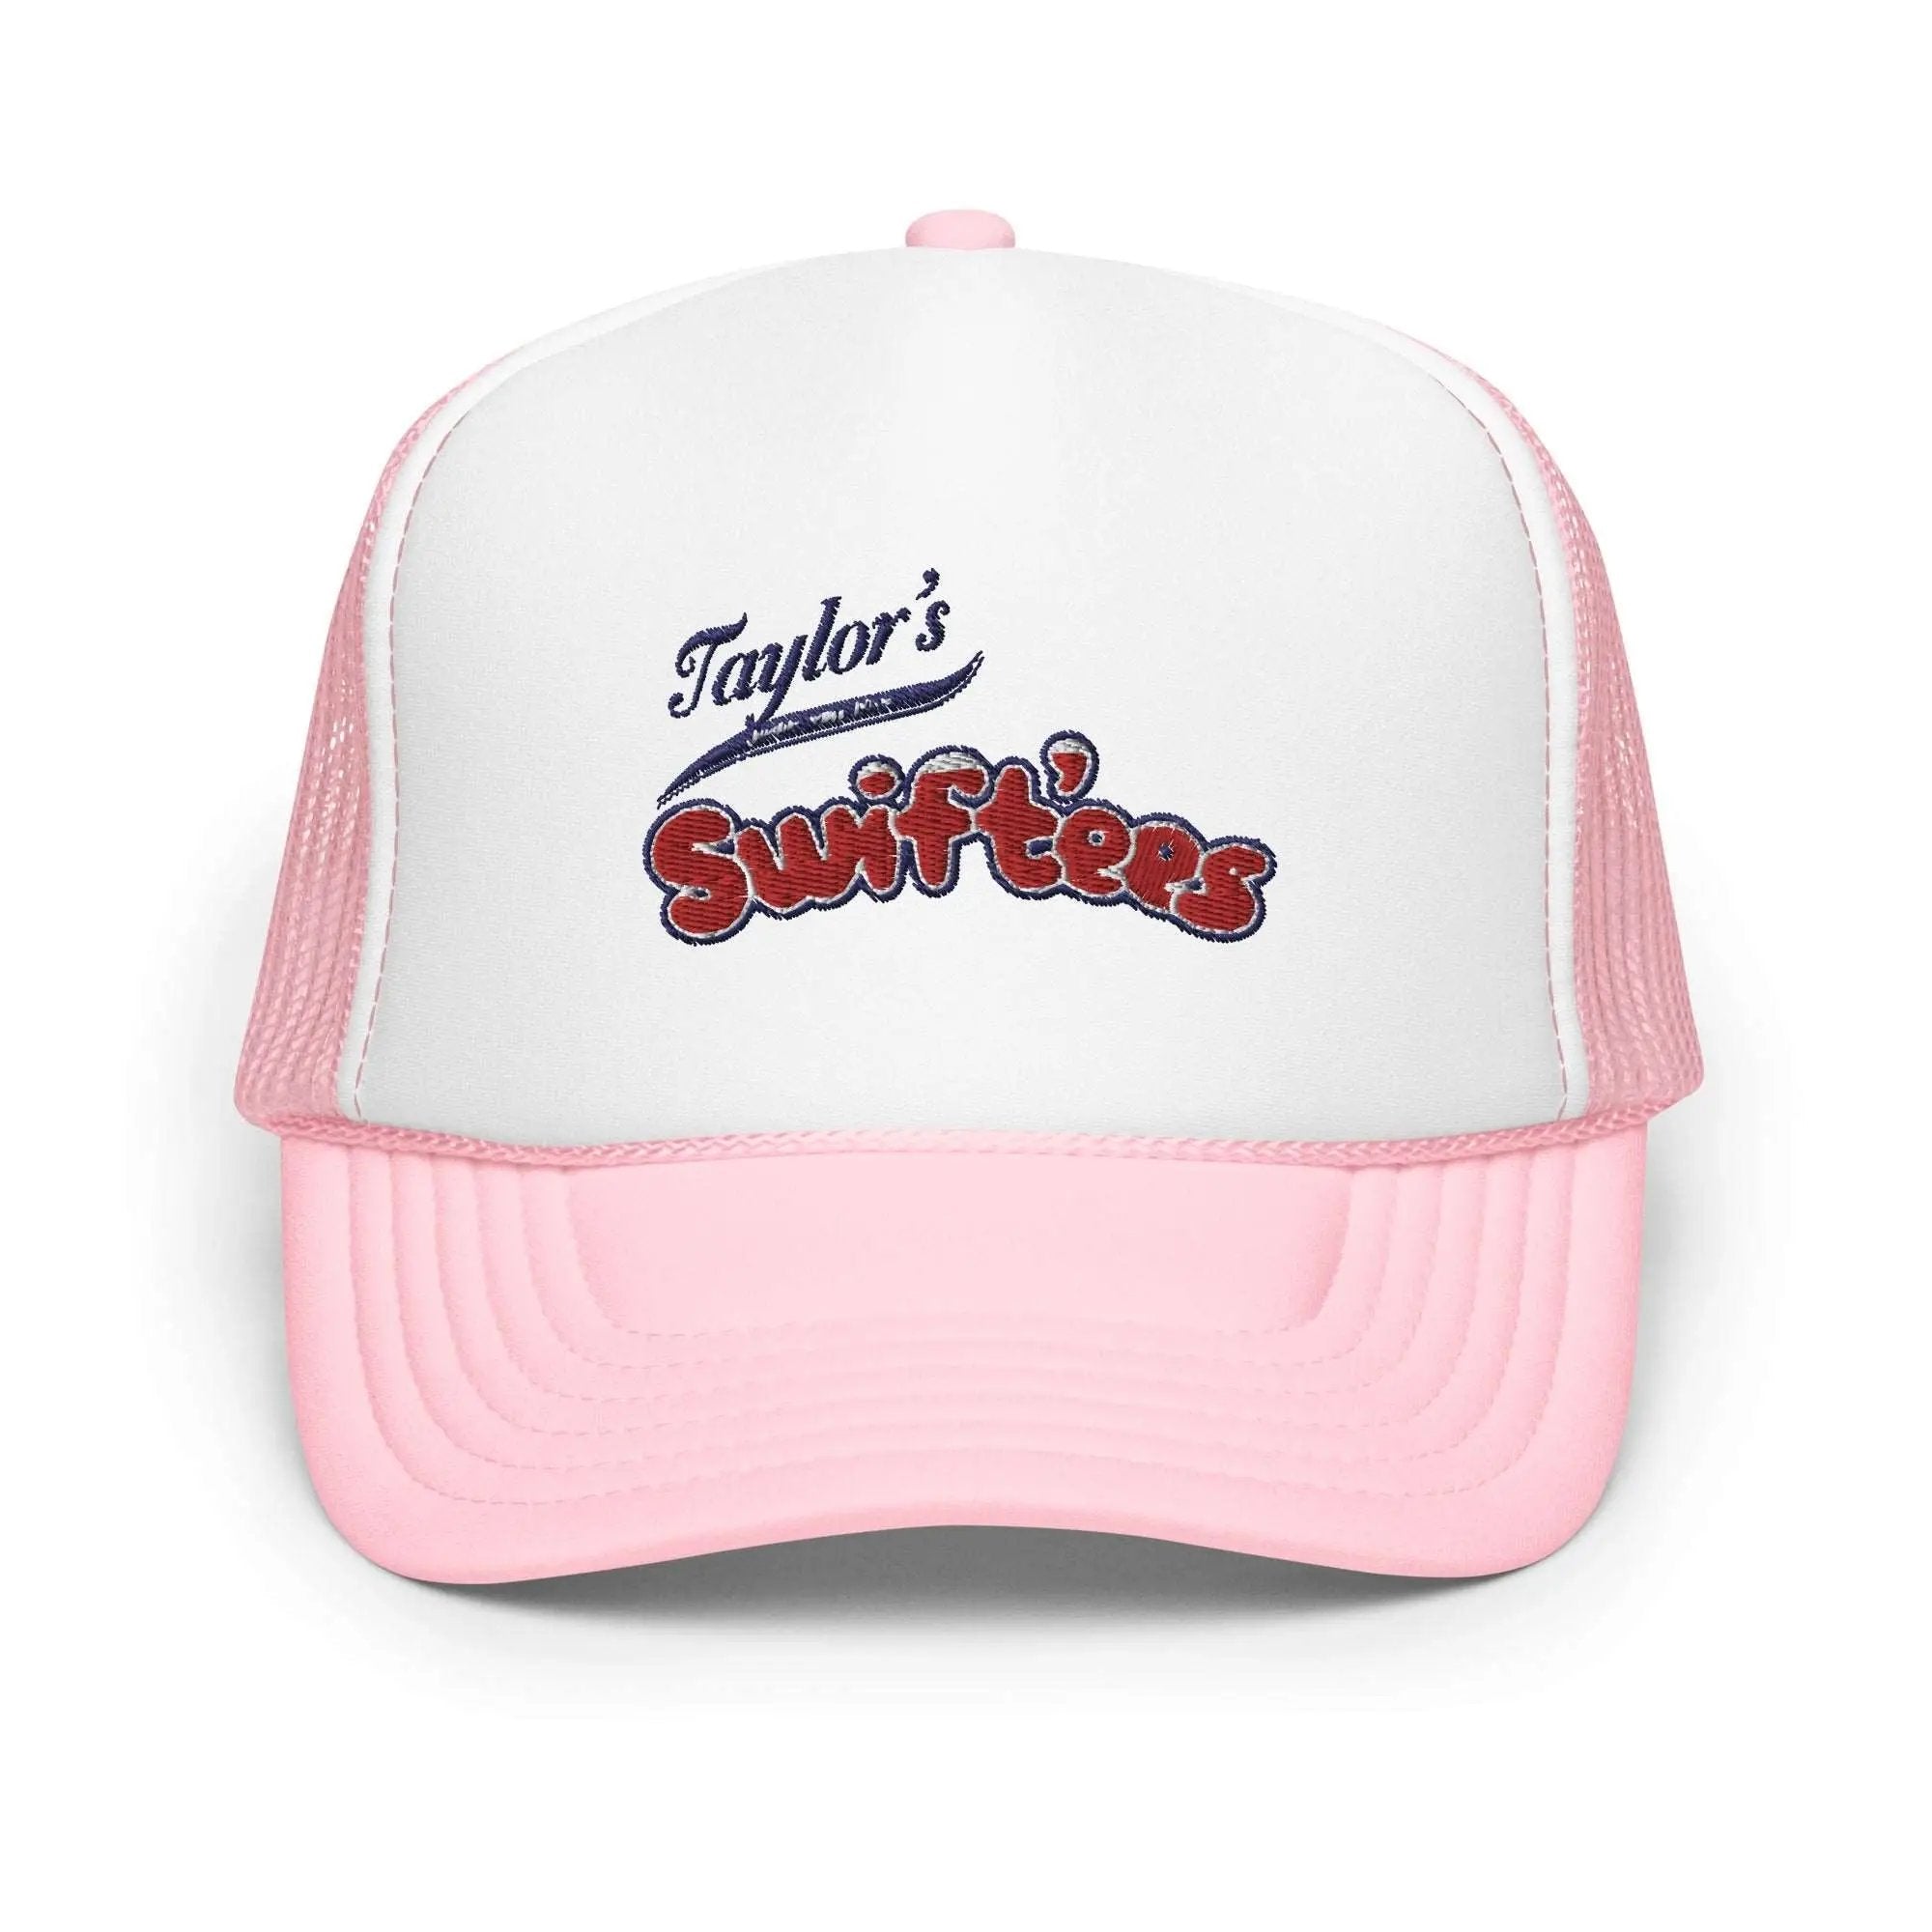 Swift'ees Foam trucker hat